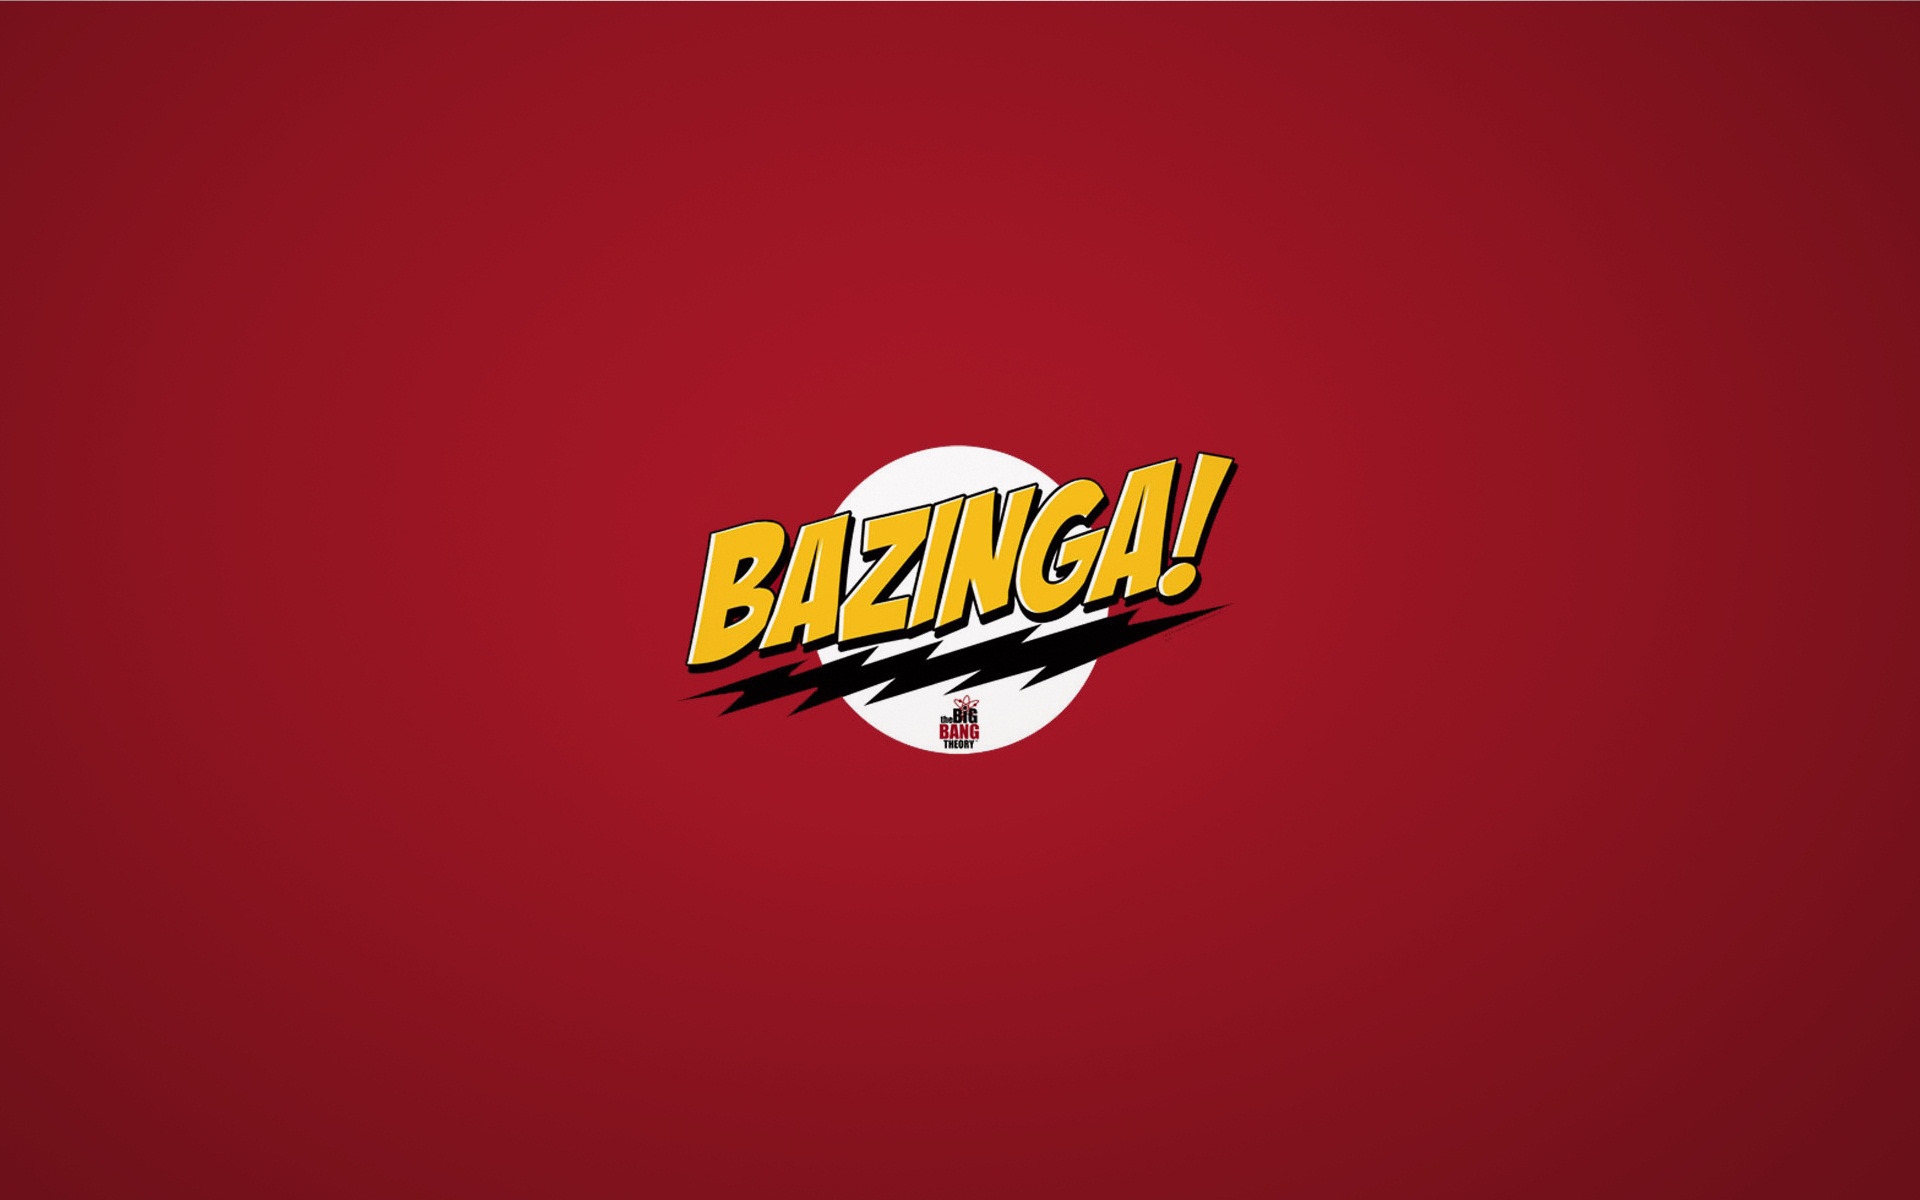 The Big Bang Theory Bazinga for 1920 x 1200 widescreen resolution